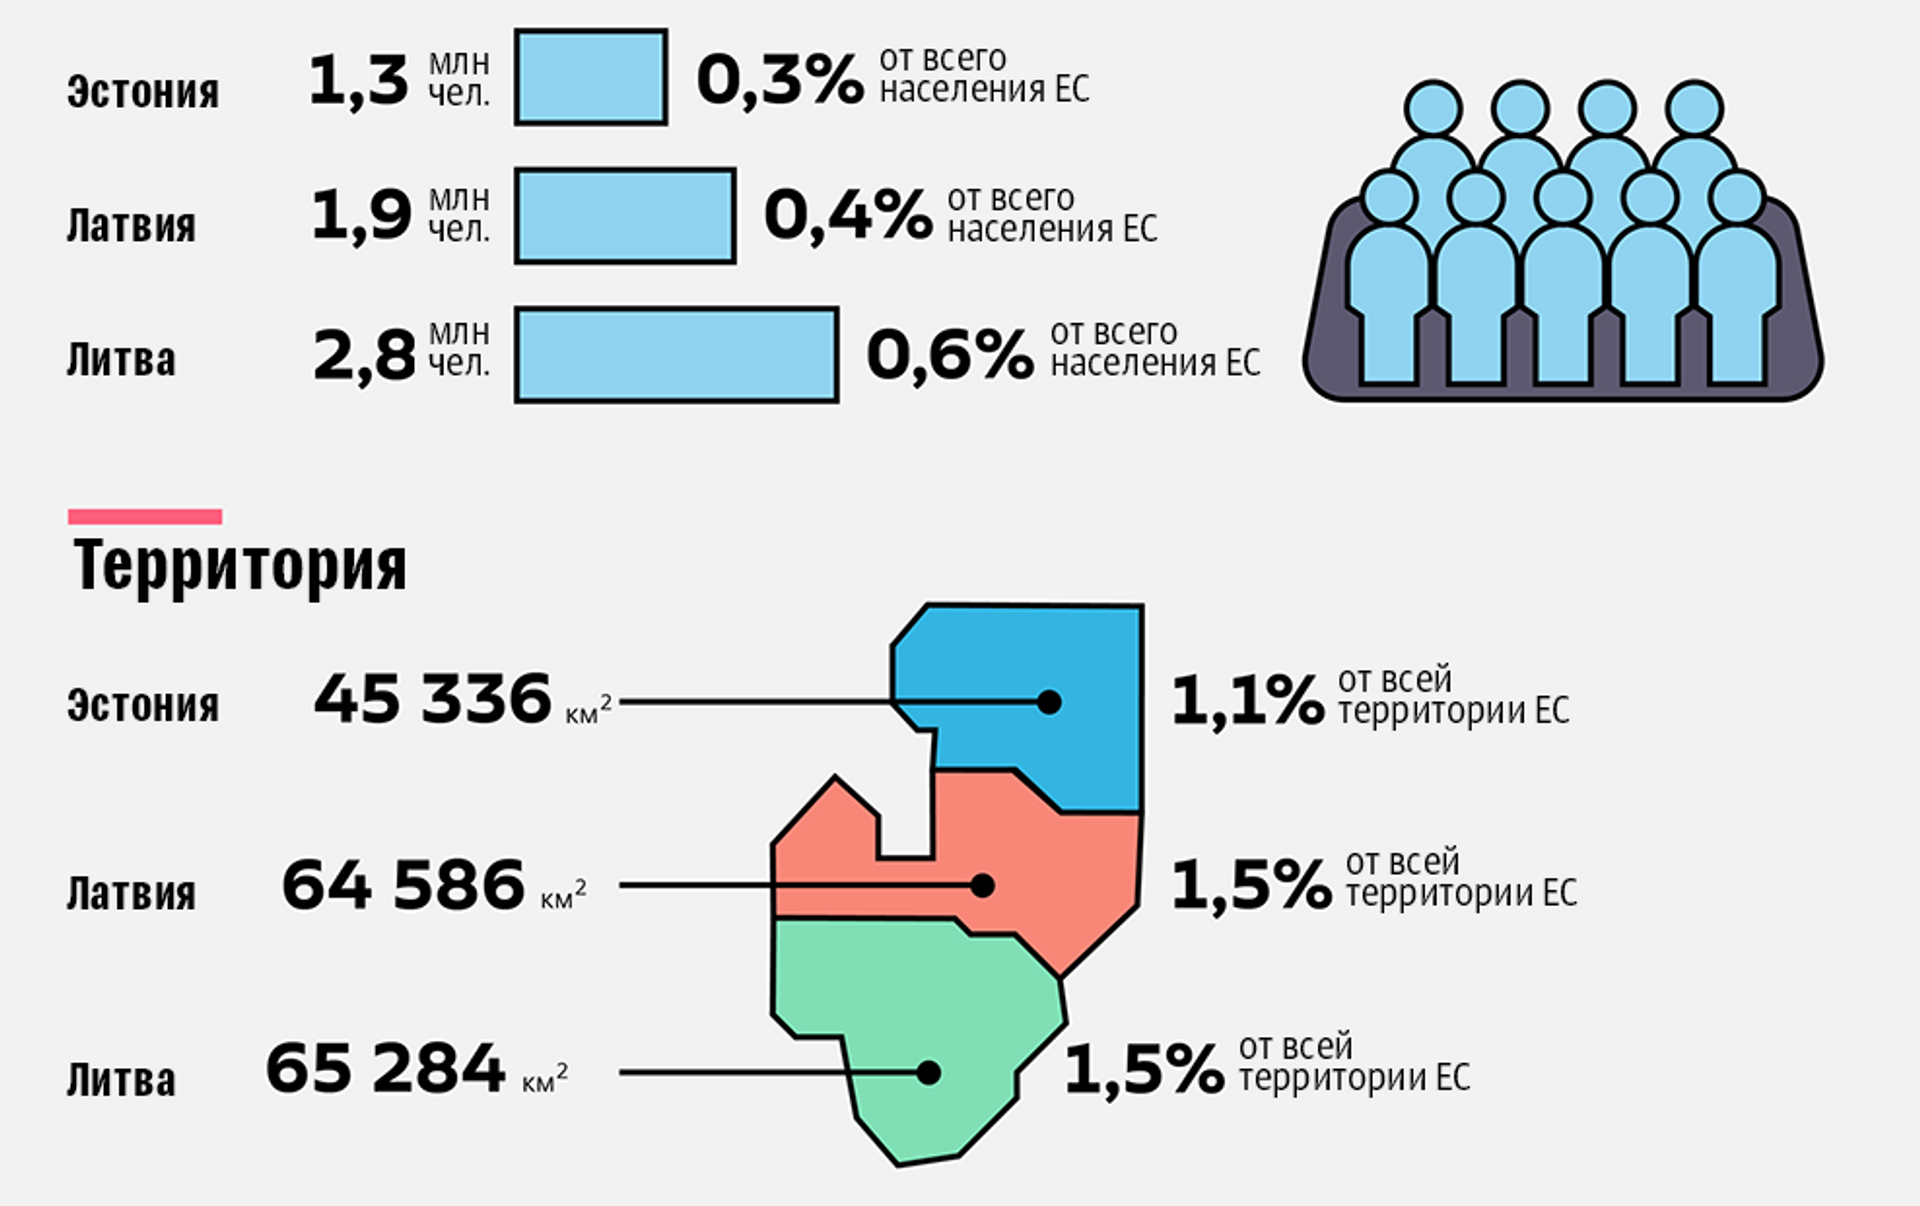 ЕС В цифрах. Страны Балтии факты. Евросоюз в цифрах. ЕС В цифрах 2021. Население прибалтики по странам